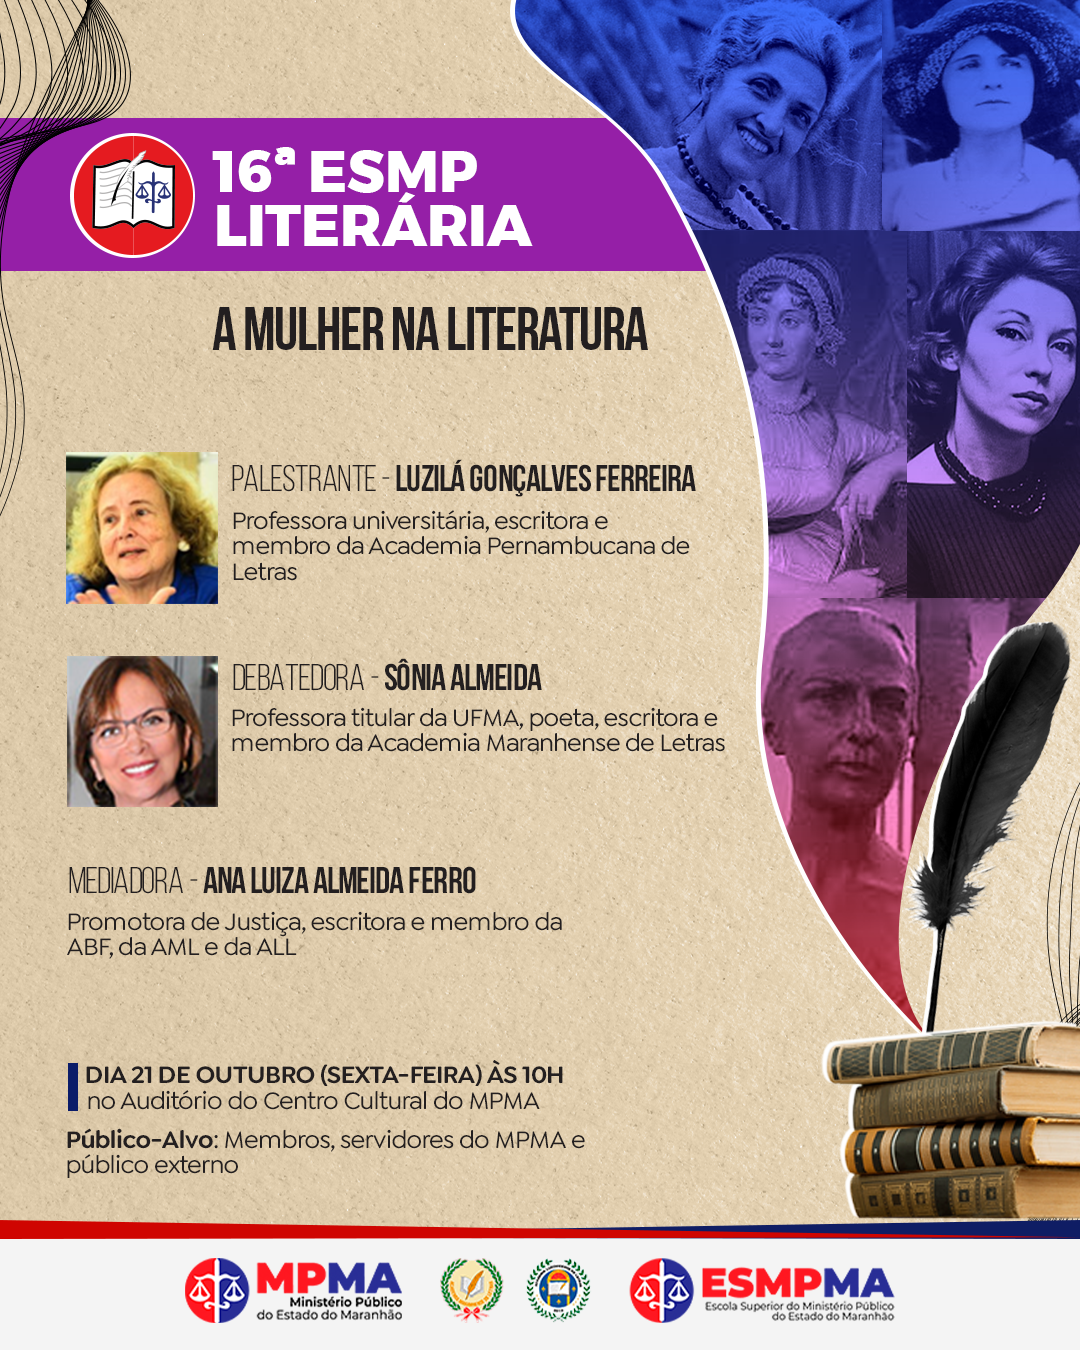 16ª ESMP LITERÁRIA - A Mulher na Literatura